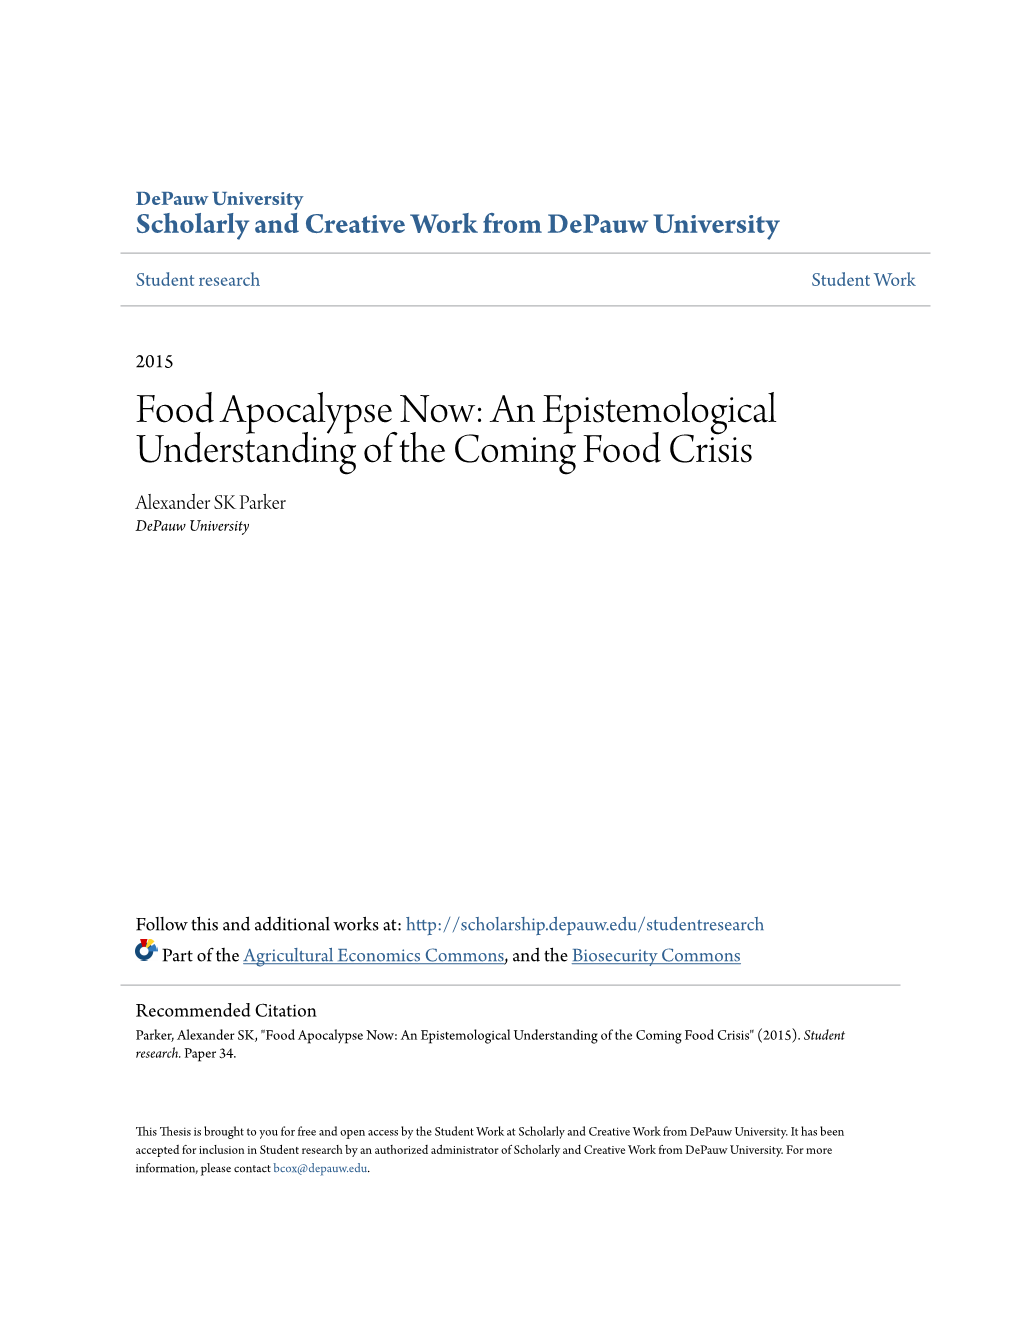 Food Apocalypse Now: an Epistemological Understanding of the Coming Food Crisis Alexander SK Parker Depauw University